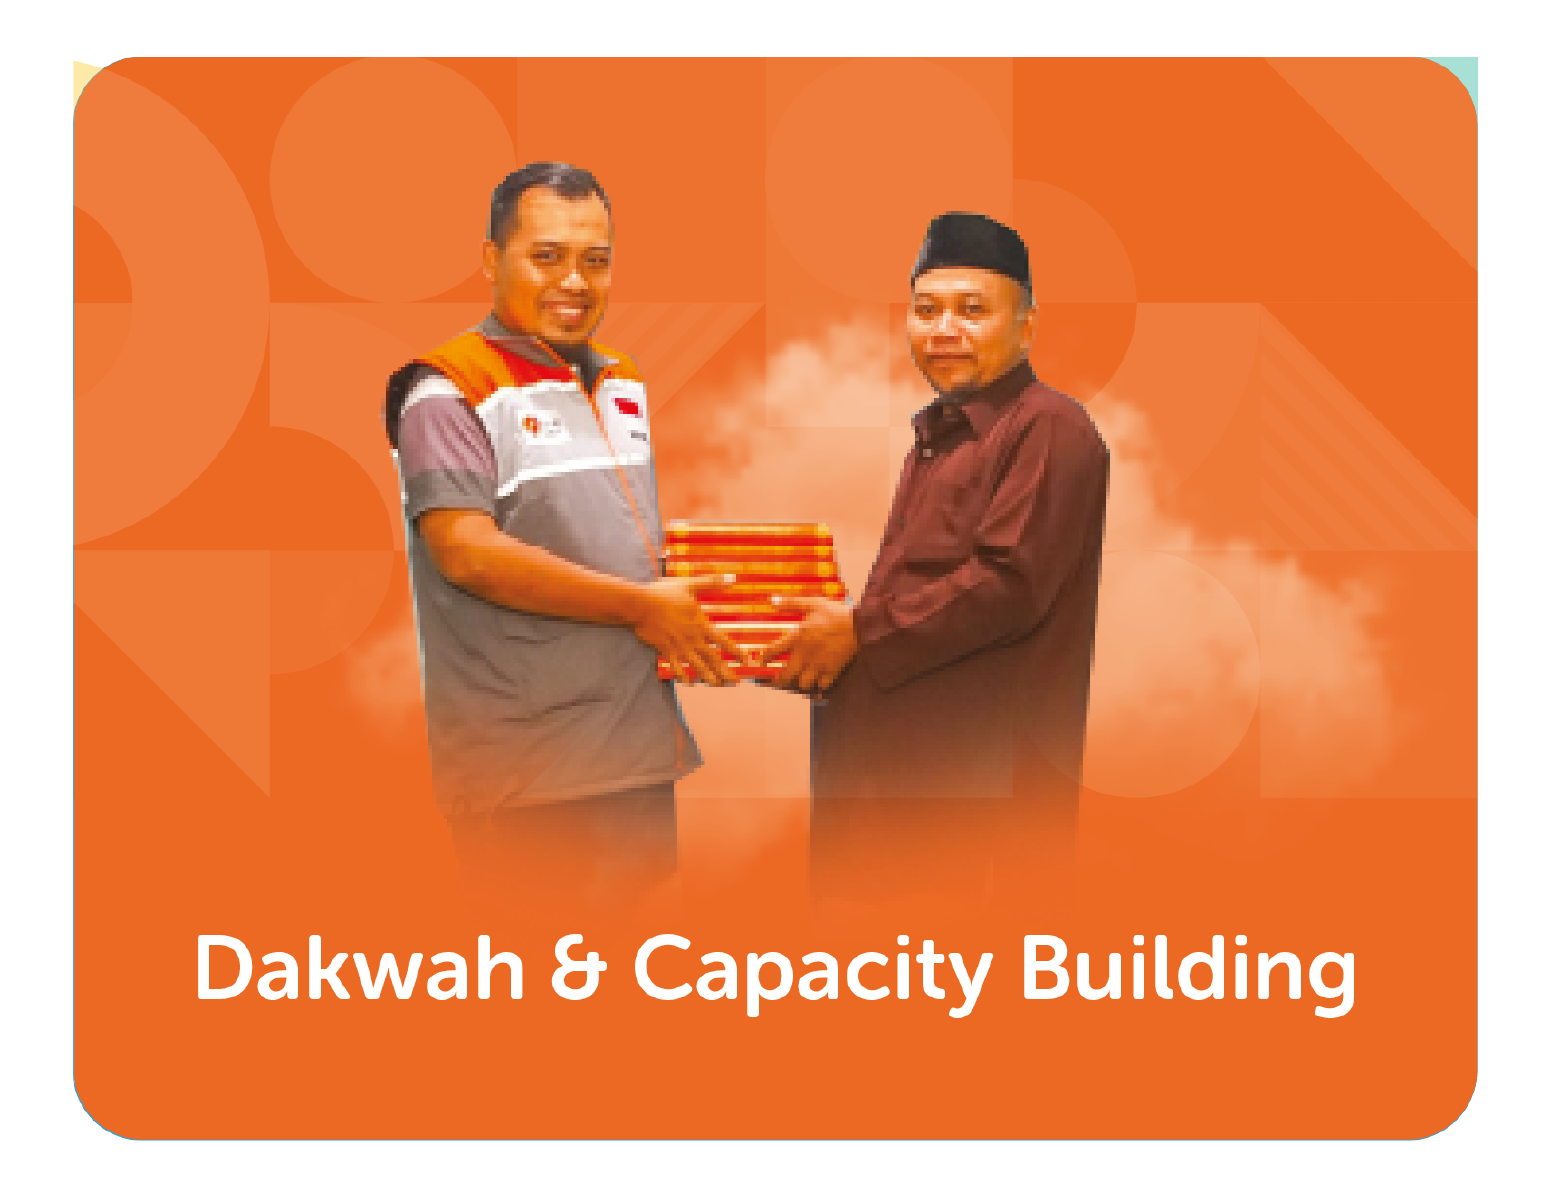 DAKWAH & CAPACITY BUILDING